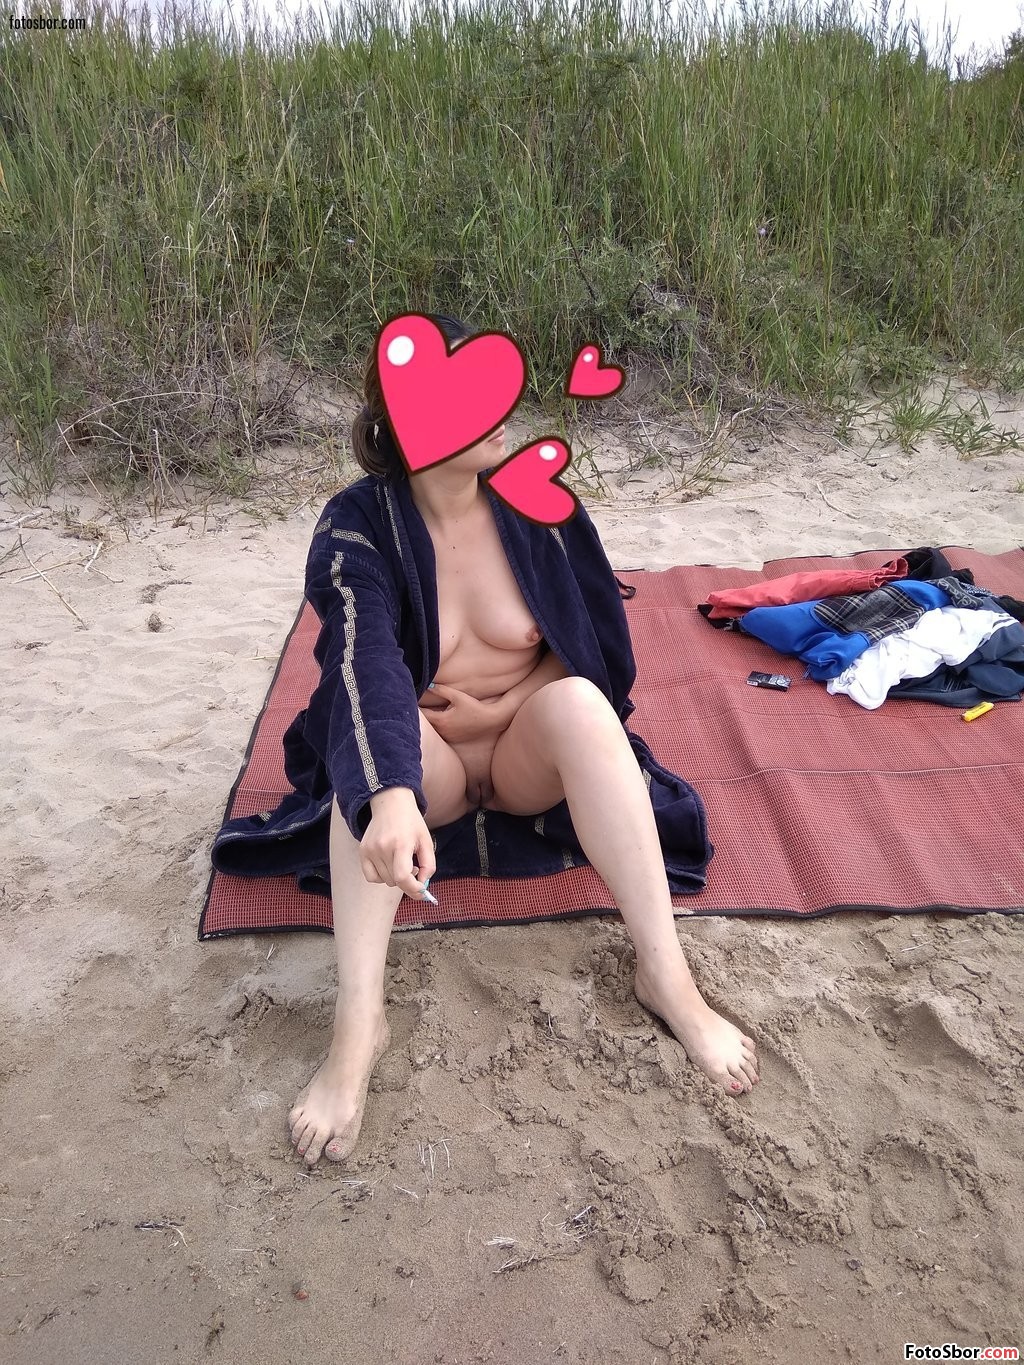 Порно фото Жена сидит на пляже в одном распахнутом халате смотреть бесплатно